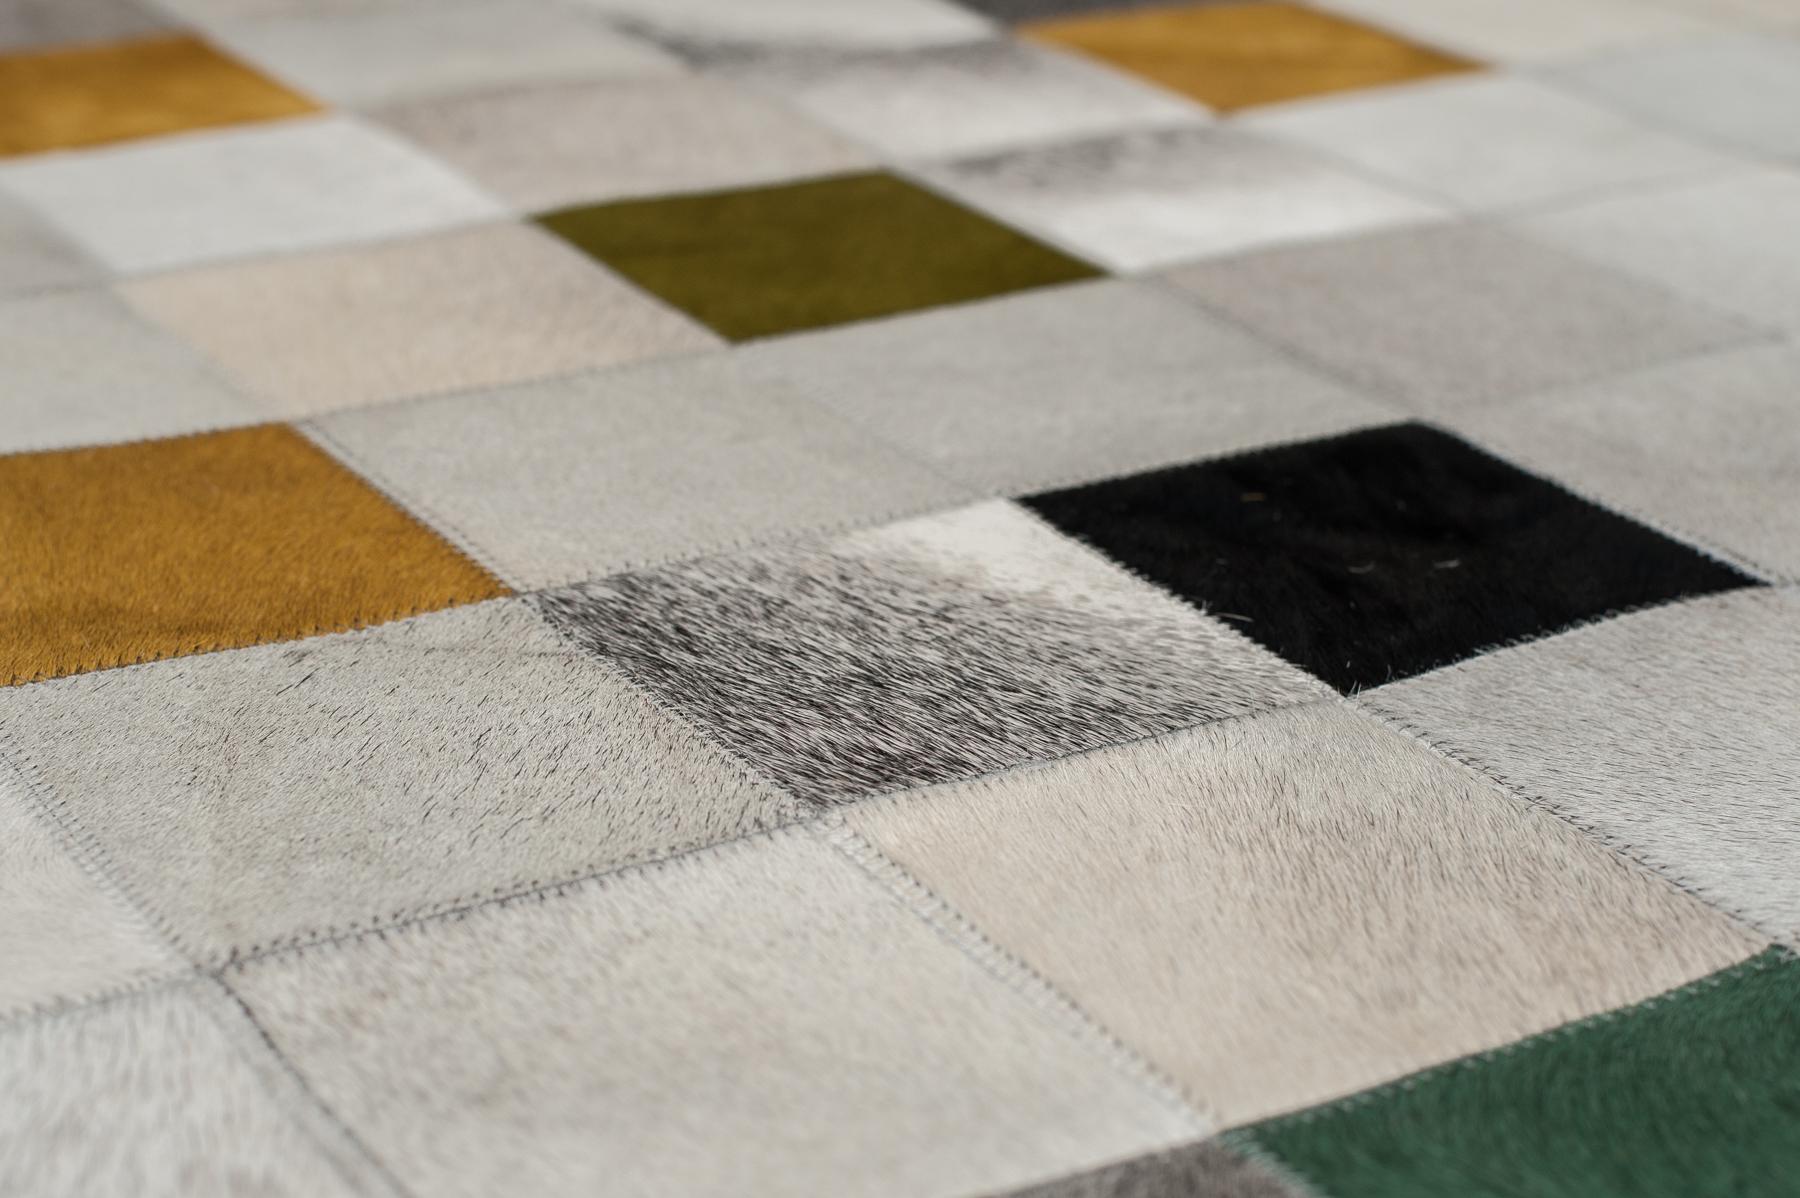 Der Teppich Falling Squares ist eine verspielte und zugleich auffällige Neuerscheinung in unserer Alta-Linie, die Ihrem Interieur viel Charisma und Raffinesse verleiht. Die Farbgebung Verde wird mit natürlichen Grautönen kombiniert, um eine warme